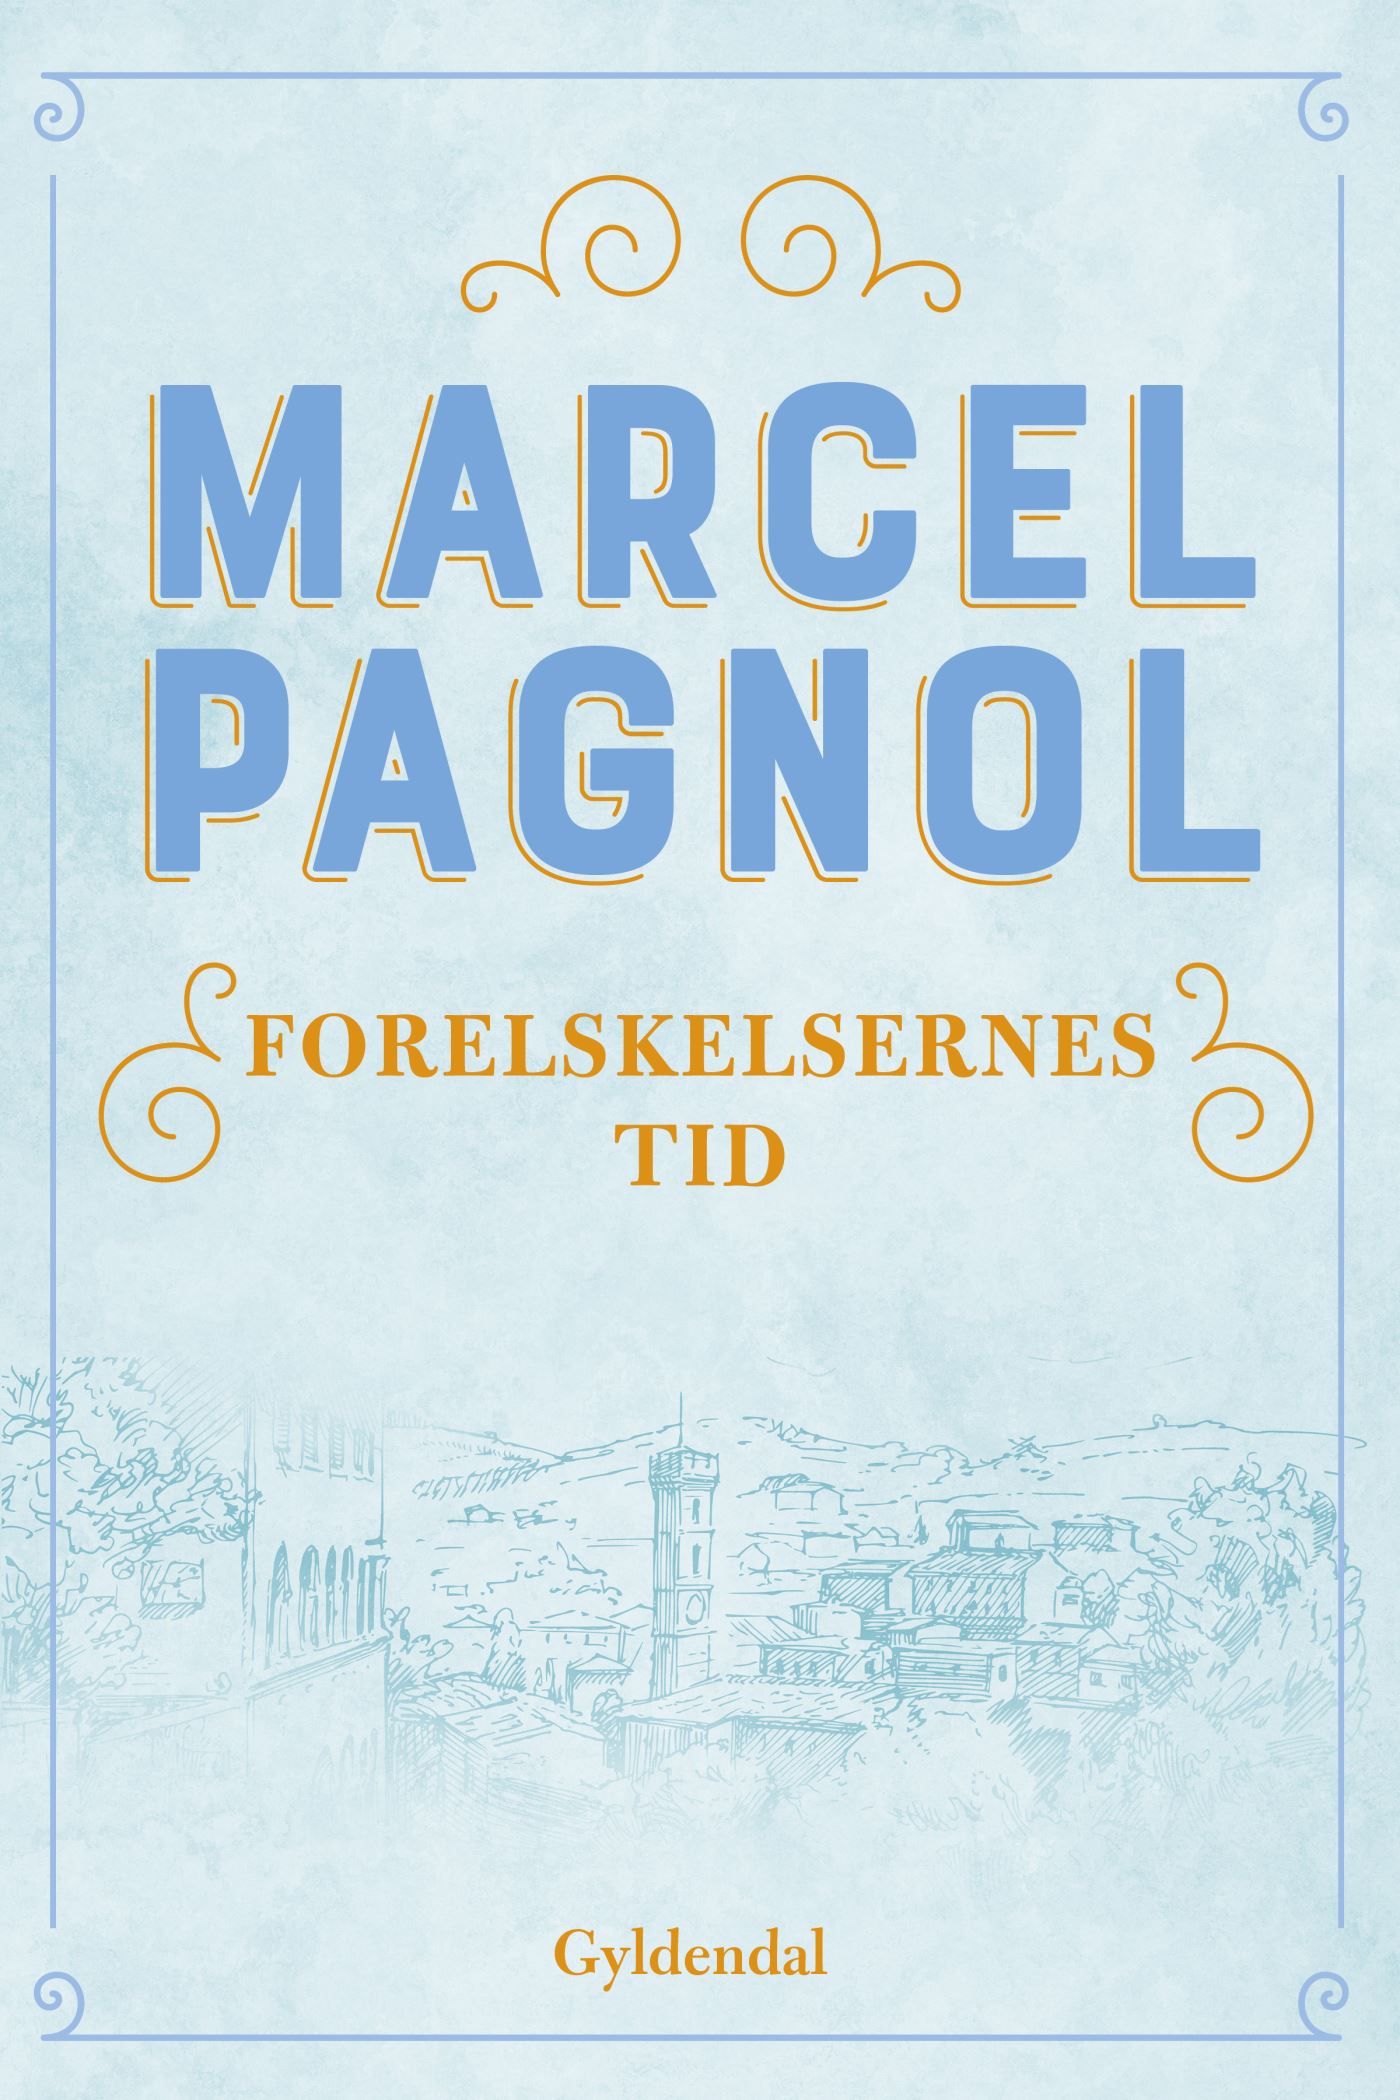 Forelskelsernes tid, e-bog af Marcel Pagnol